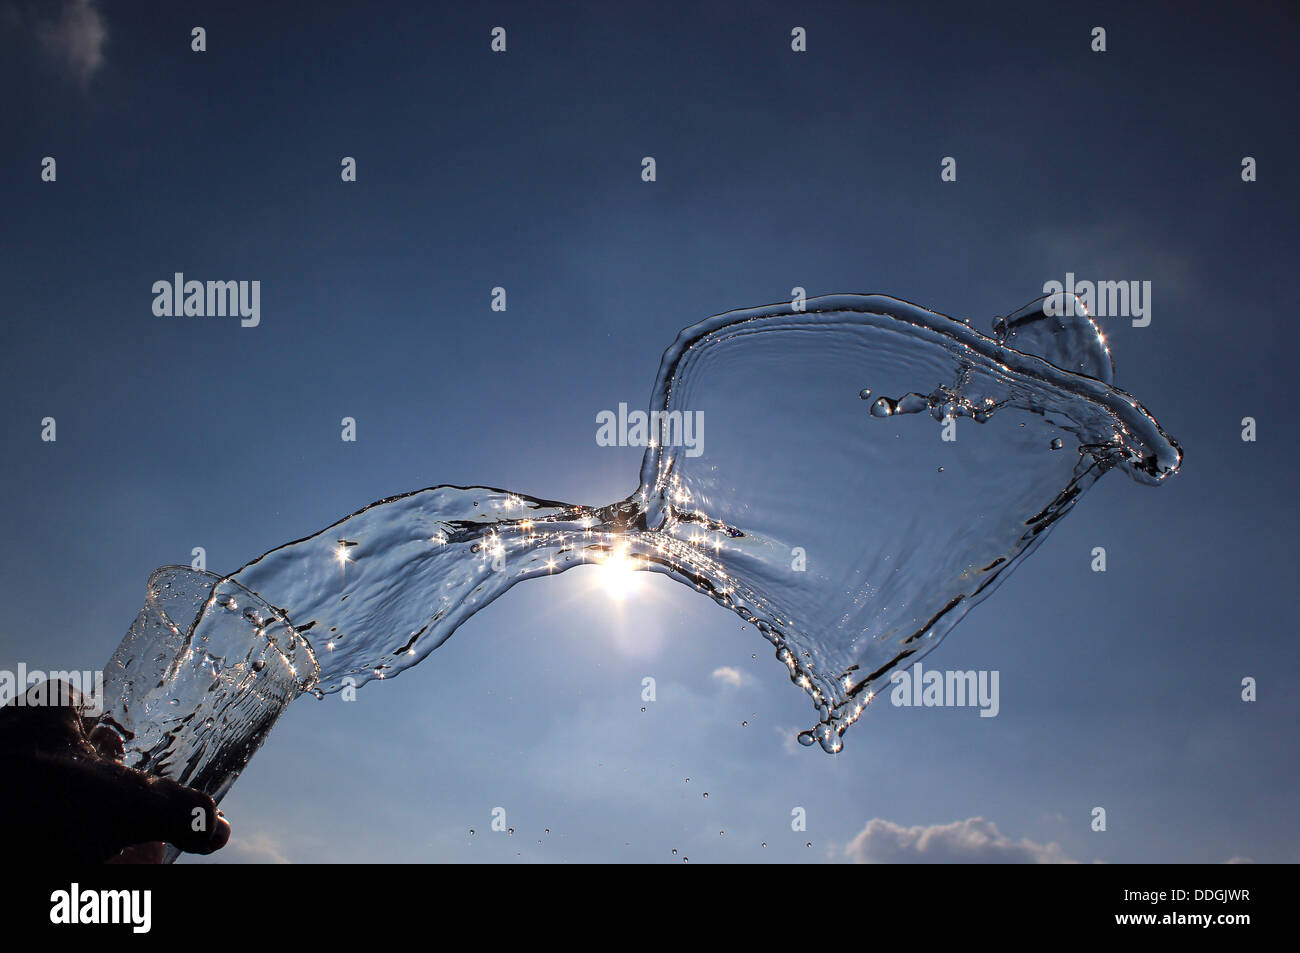 Water splashing from pint glass Stock Photo